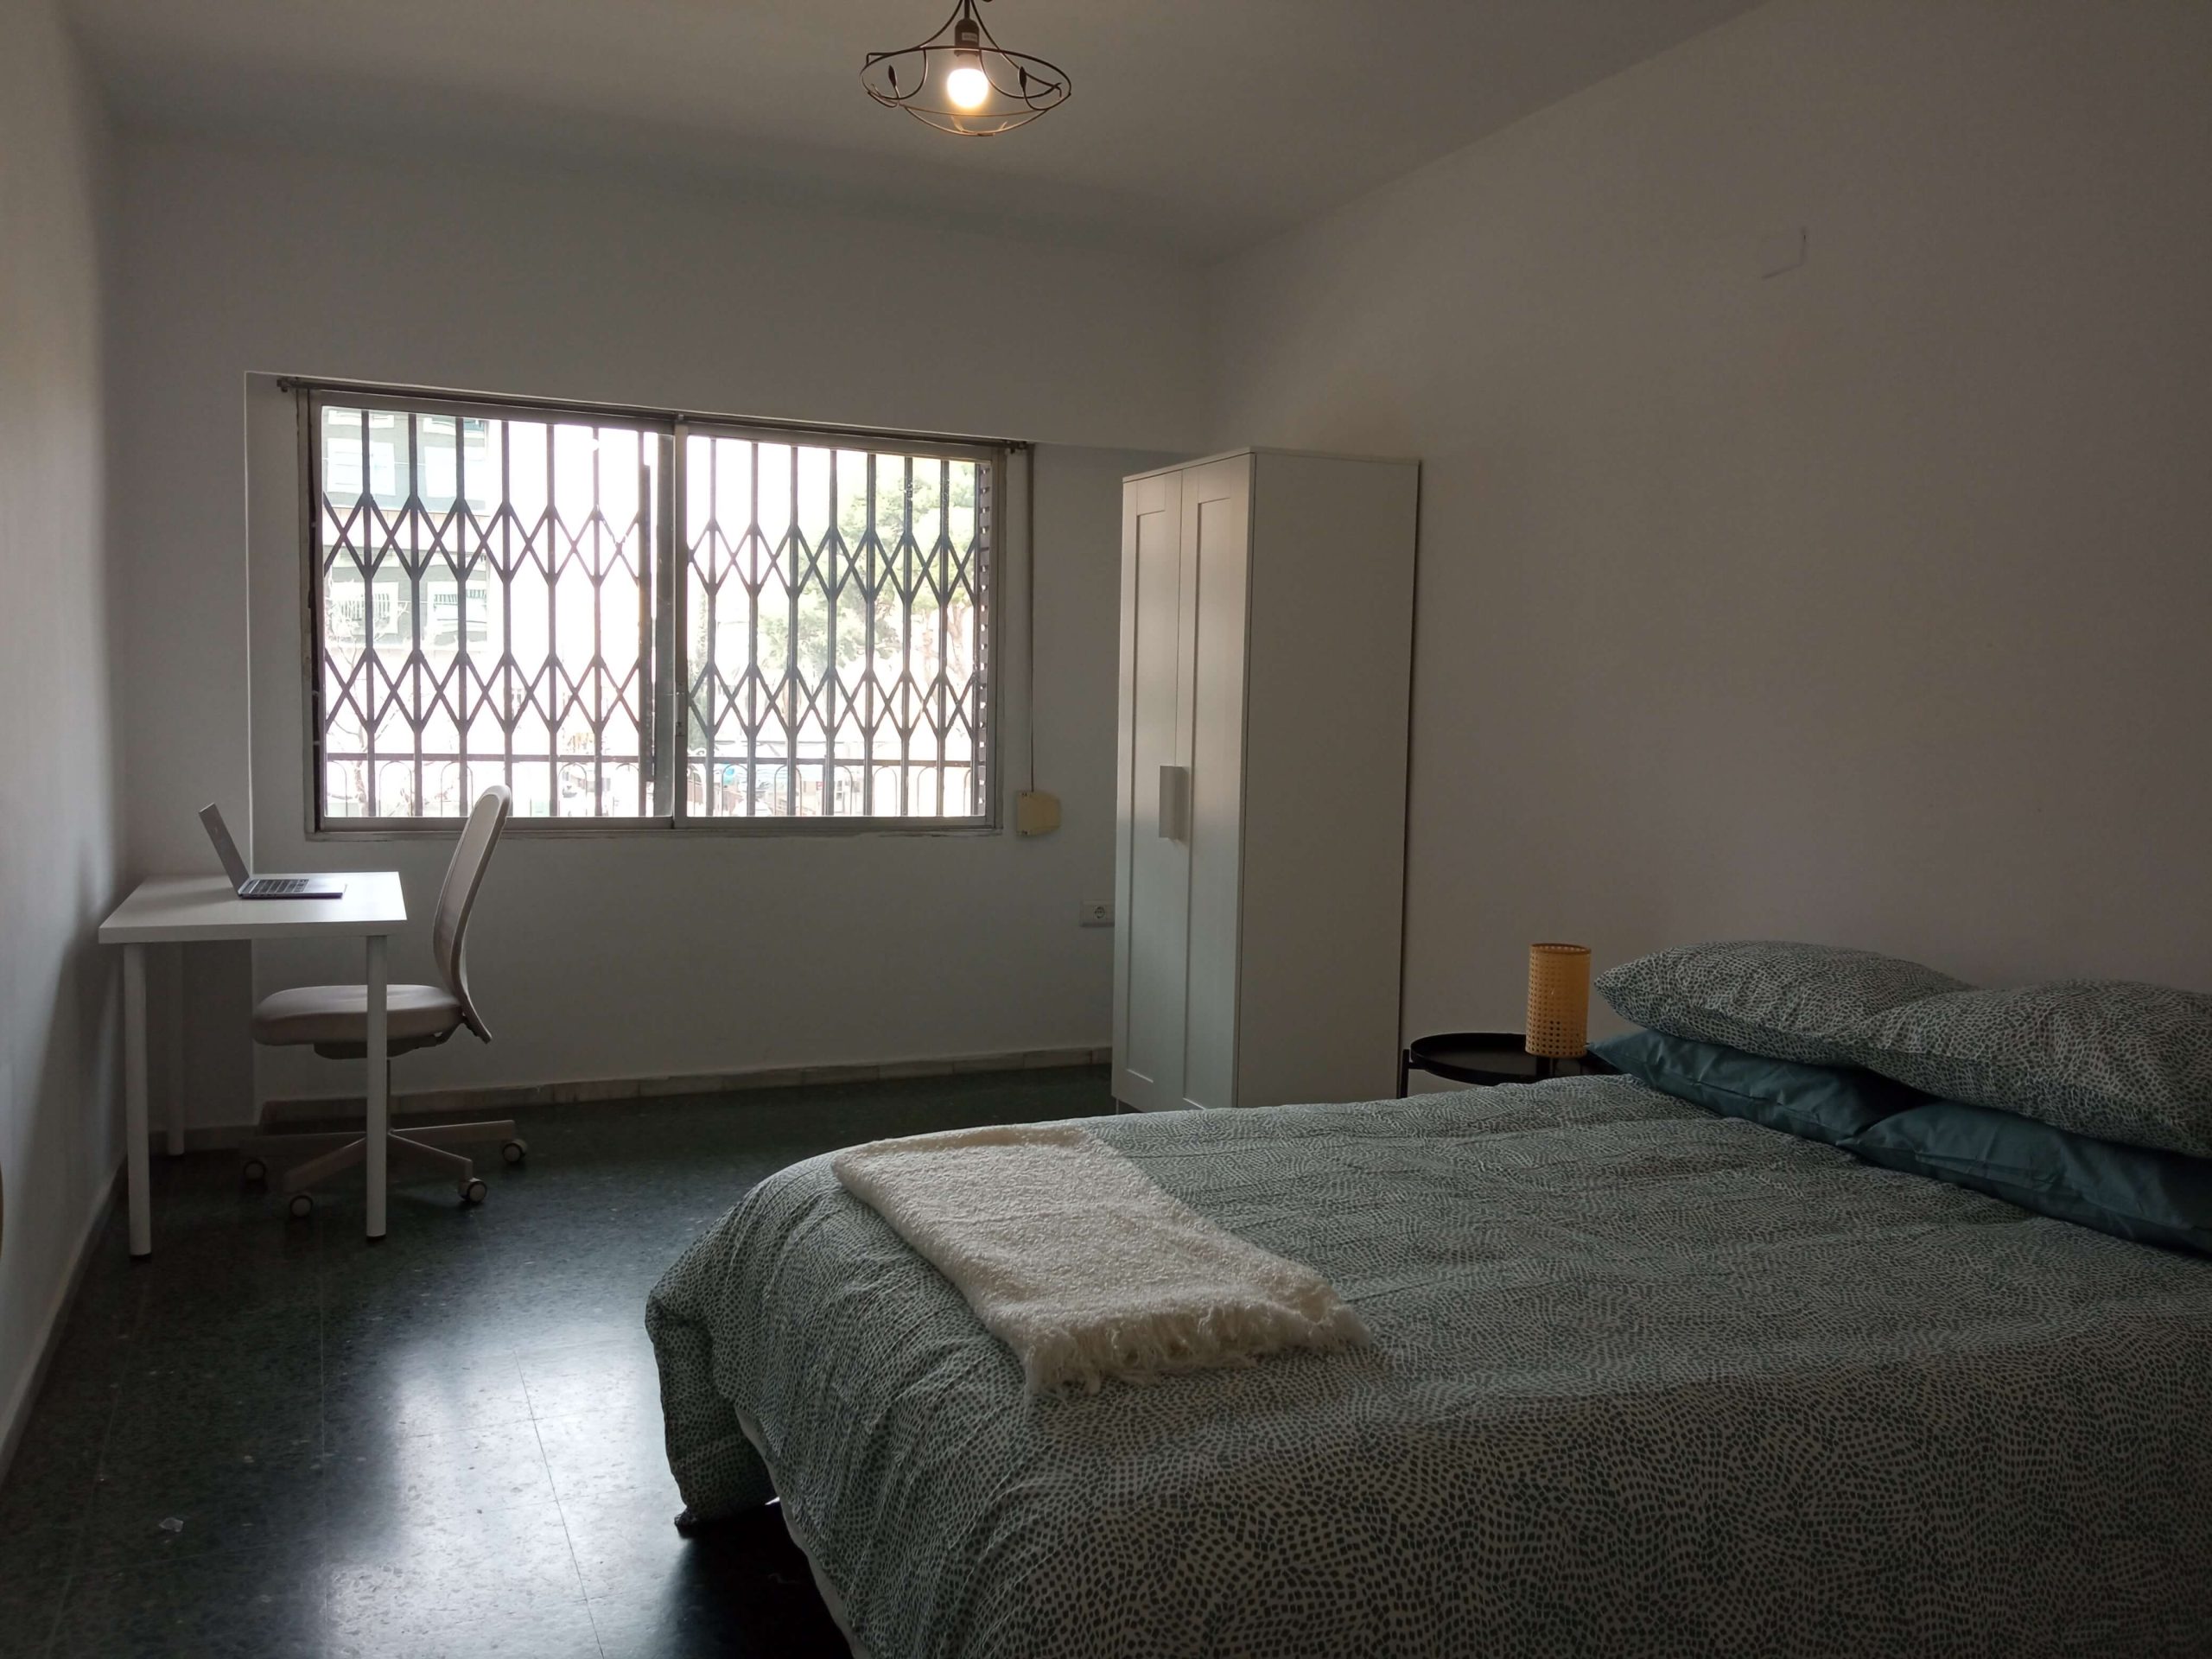 Bedroom 3 apartment for rent in valencia, guillen